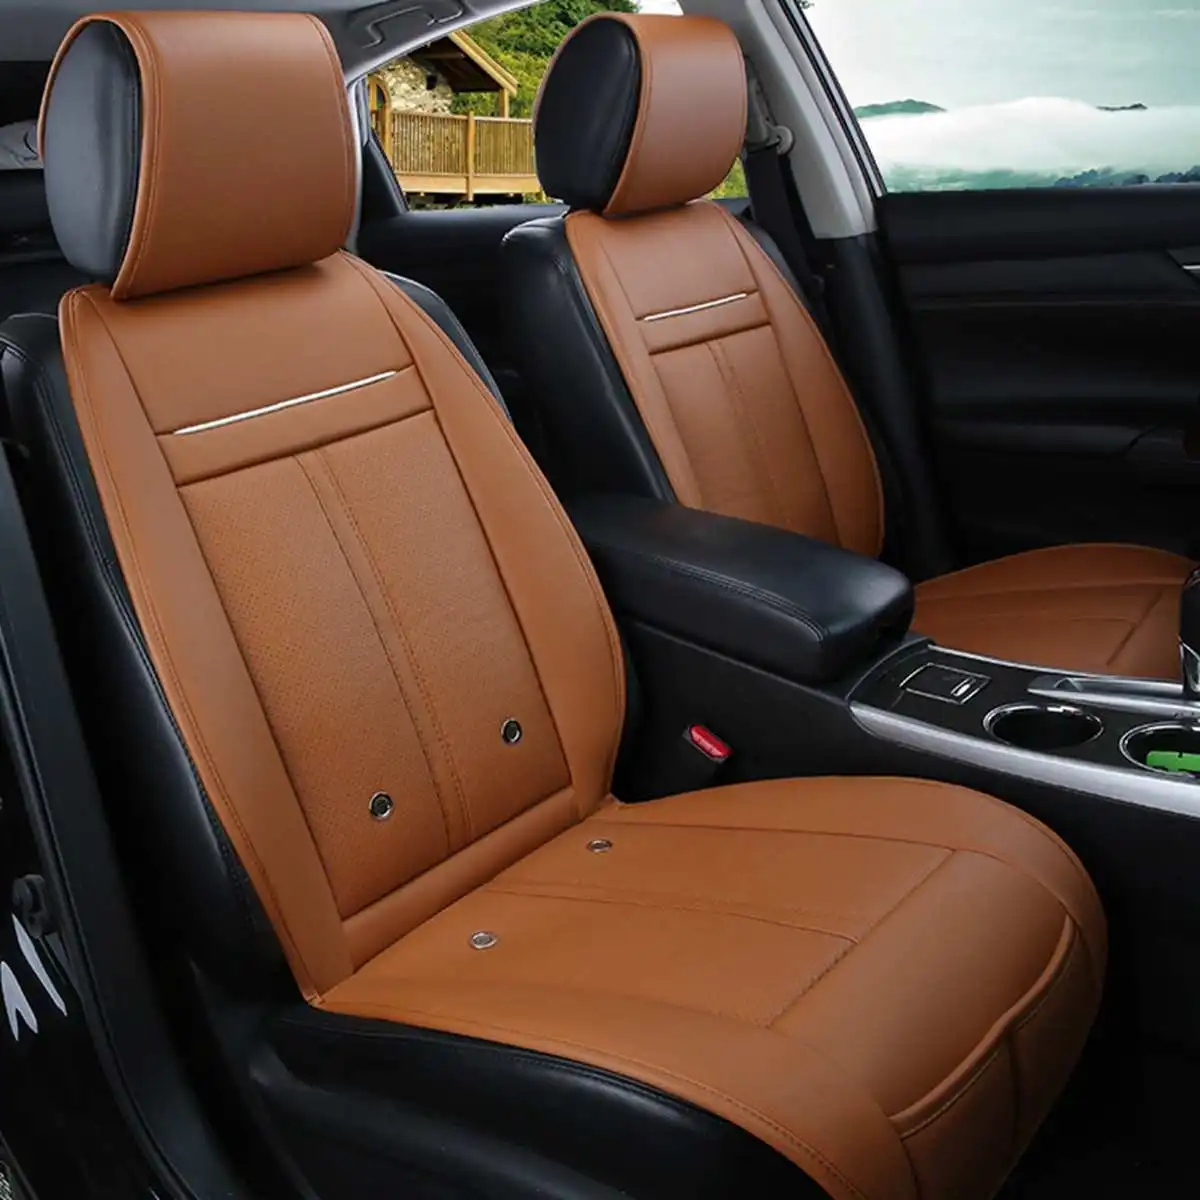 Универсальный чехол 3 в 1 для автомобильного сиденья, охлаждающий и теплый массажный стул с 8 вентиляторами, многофункциональные чехлы для сидений автомобиля - Название цвета: Orange